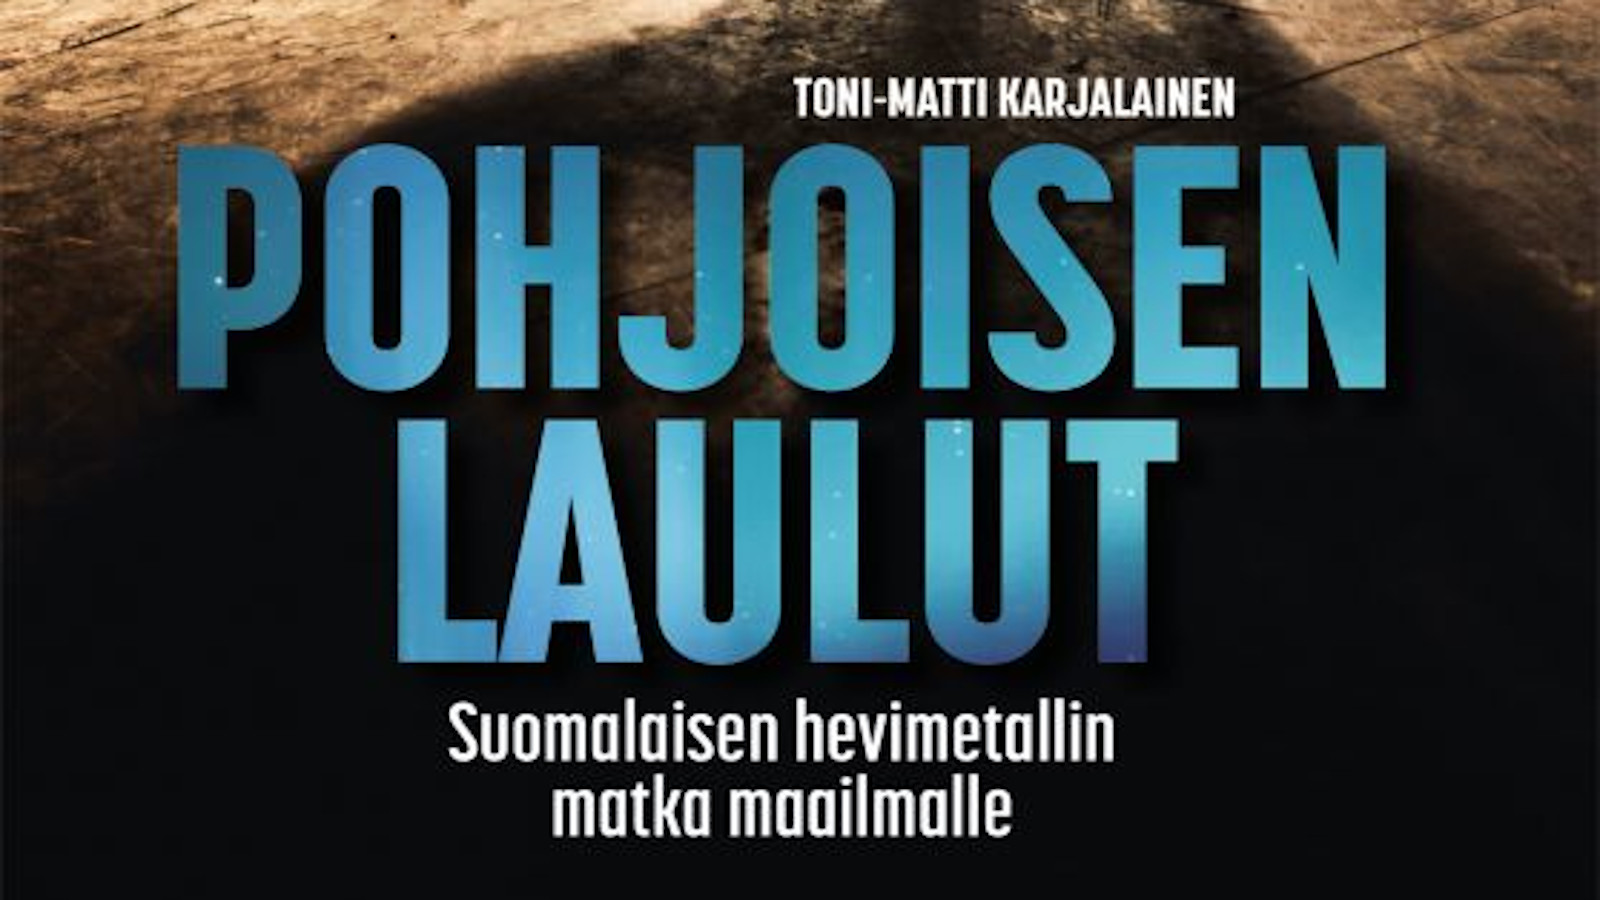 Kannen osa Toni-Matti Karjalaisen kirjoittamasta Pohjoisen laulut – Suomalaisen hevimetallin matka maailmalle kirjasta.